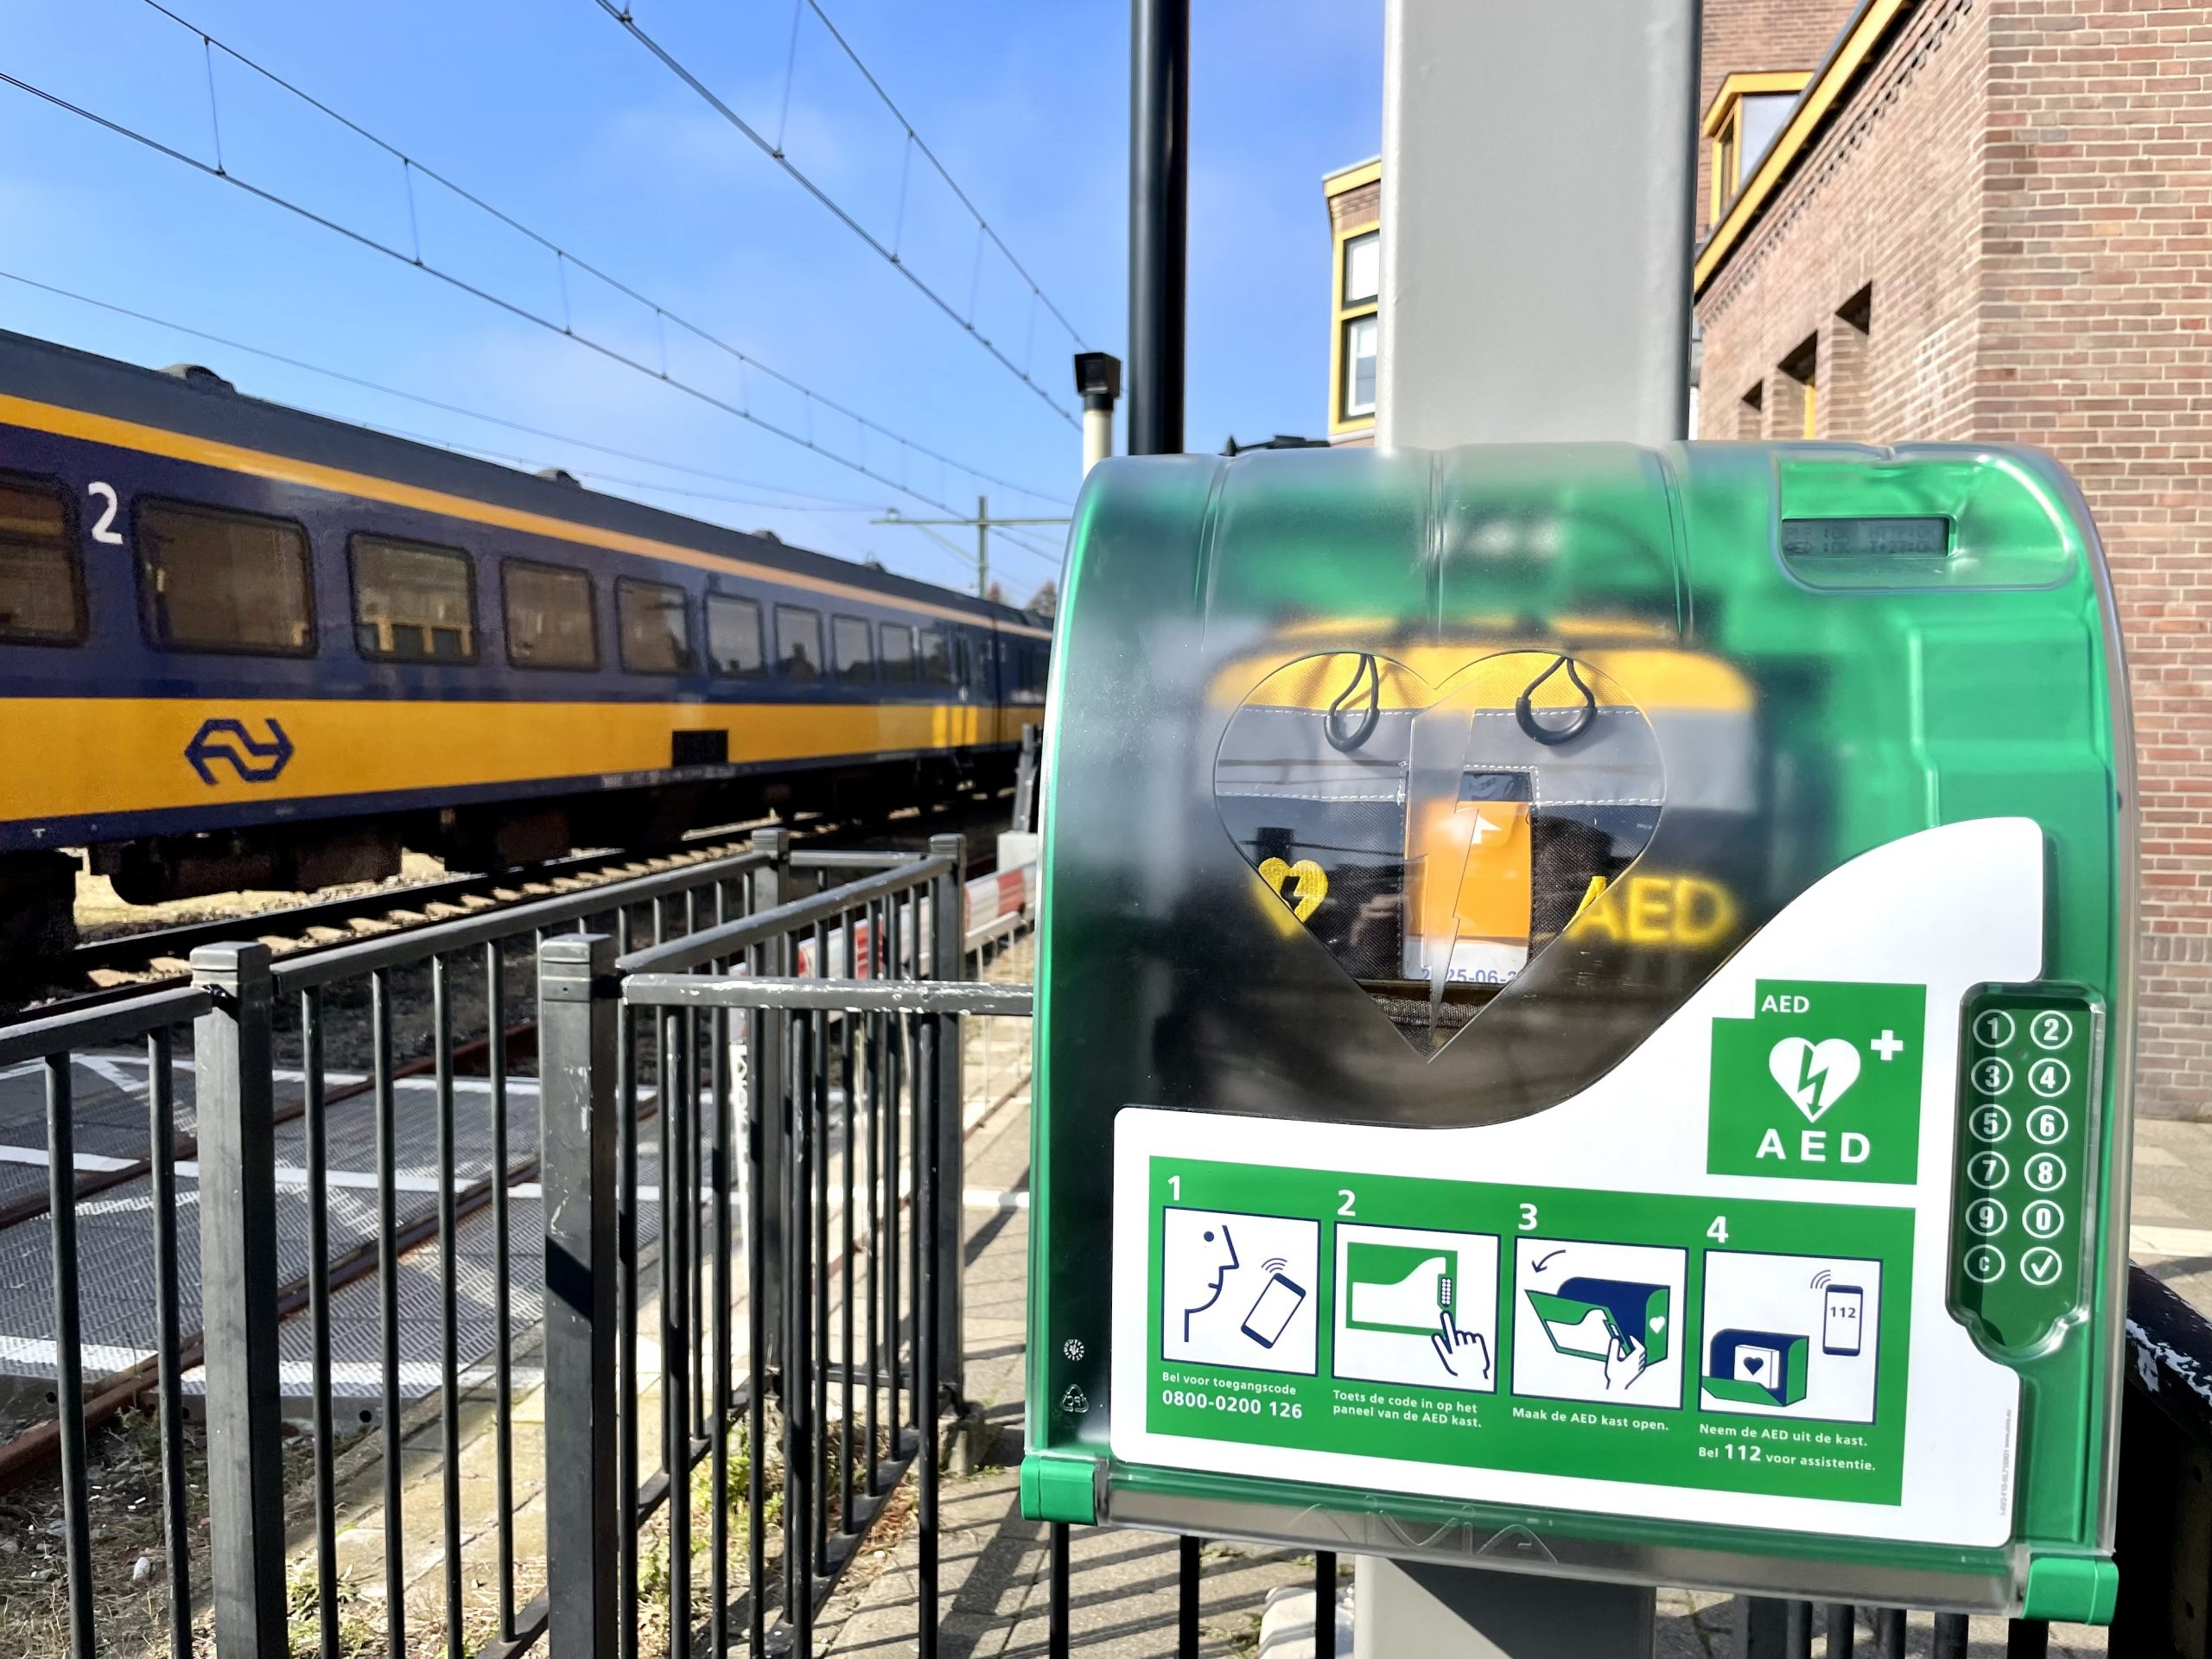 Cada vez más estaciones en los Países Bajos equipadas con AED